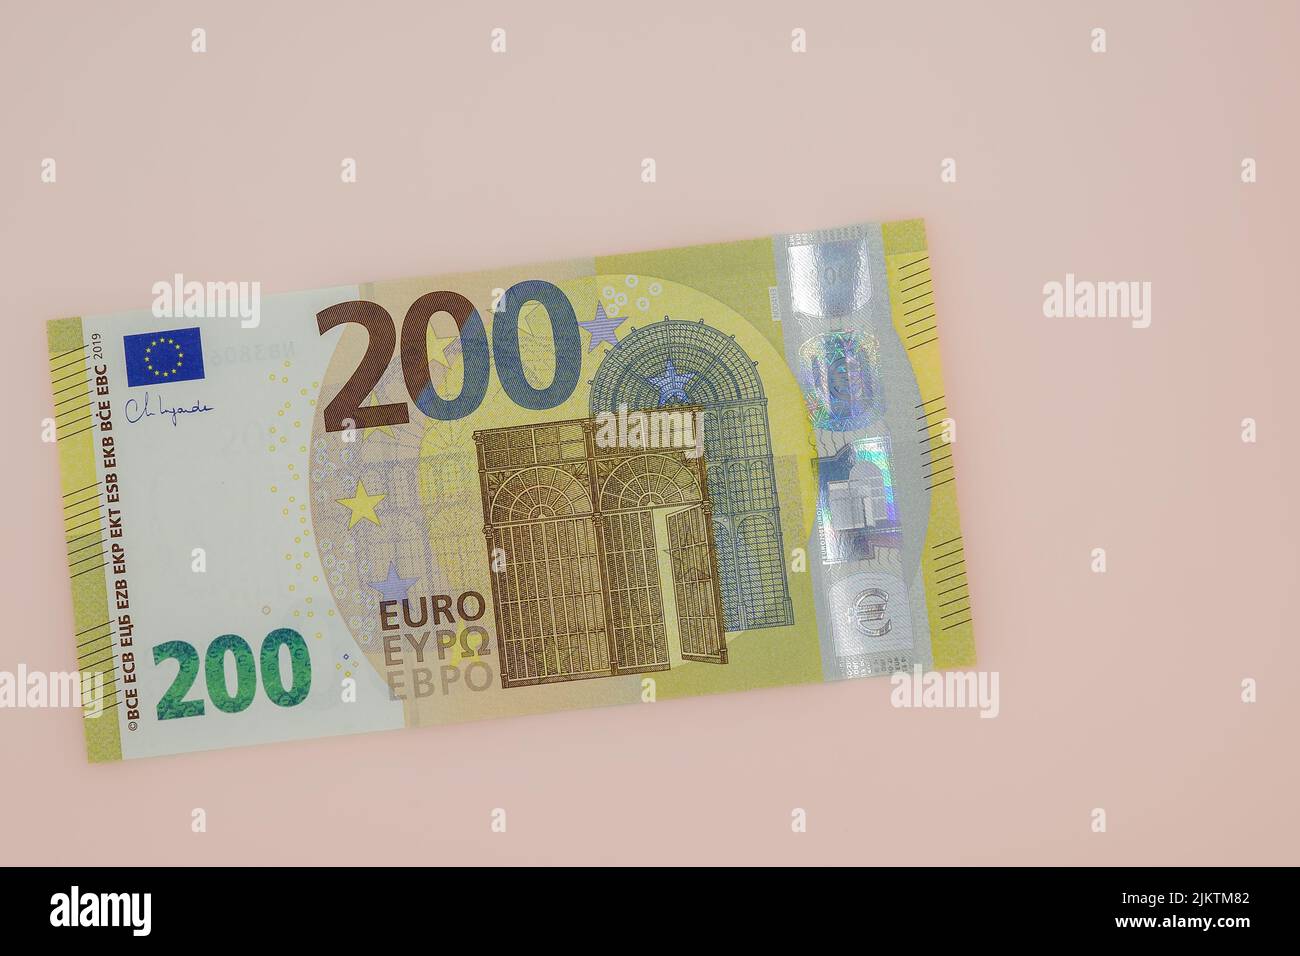 Eine Nahaufnahme einer 200-Euro-Banknote auf dem Hintergrund einer hellpfirsichfarbenen Note. Stockfoto